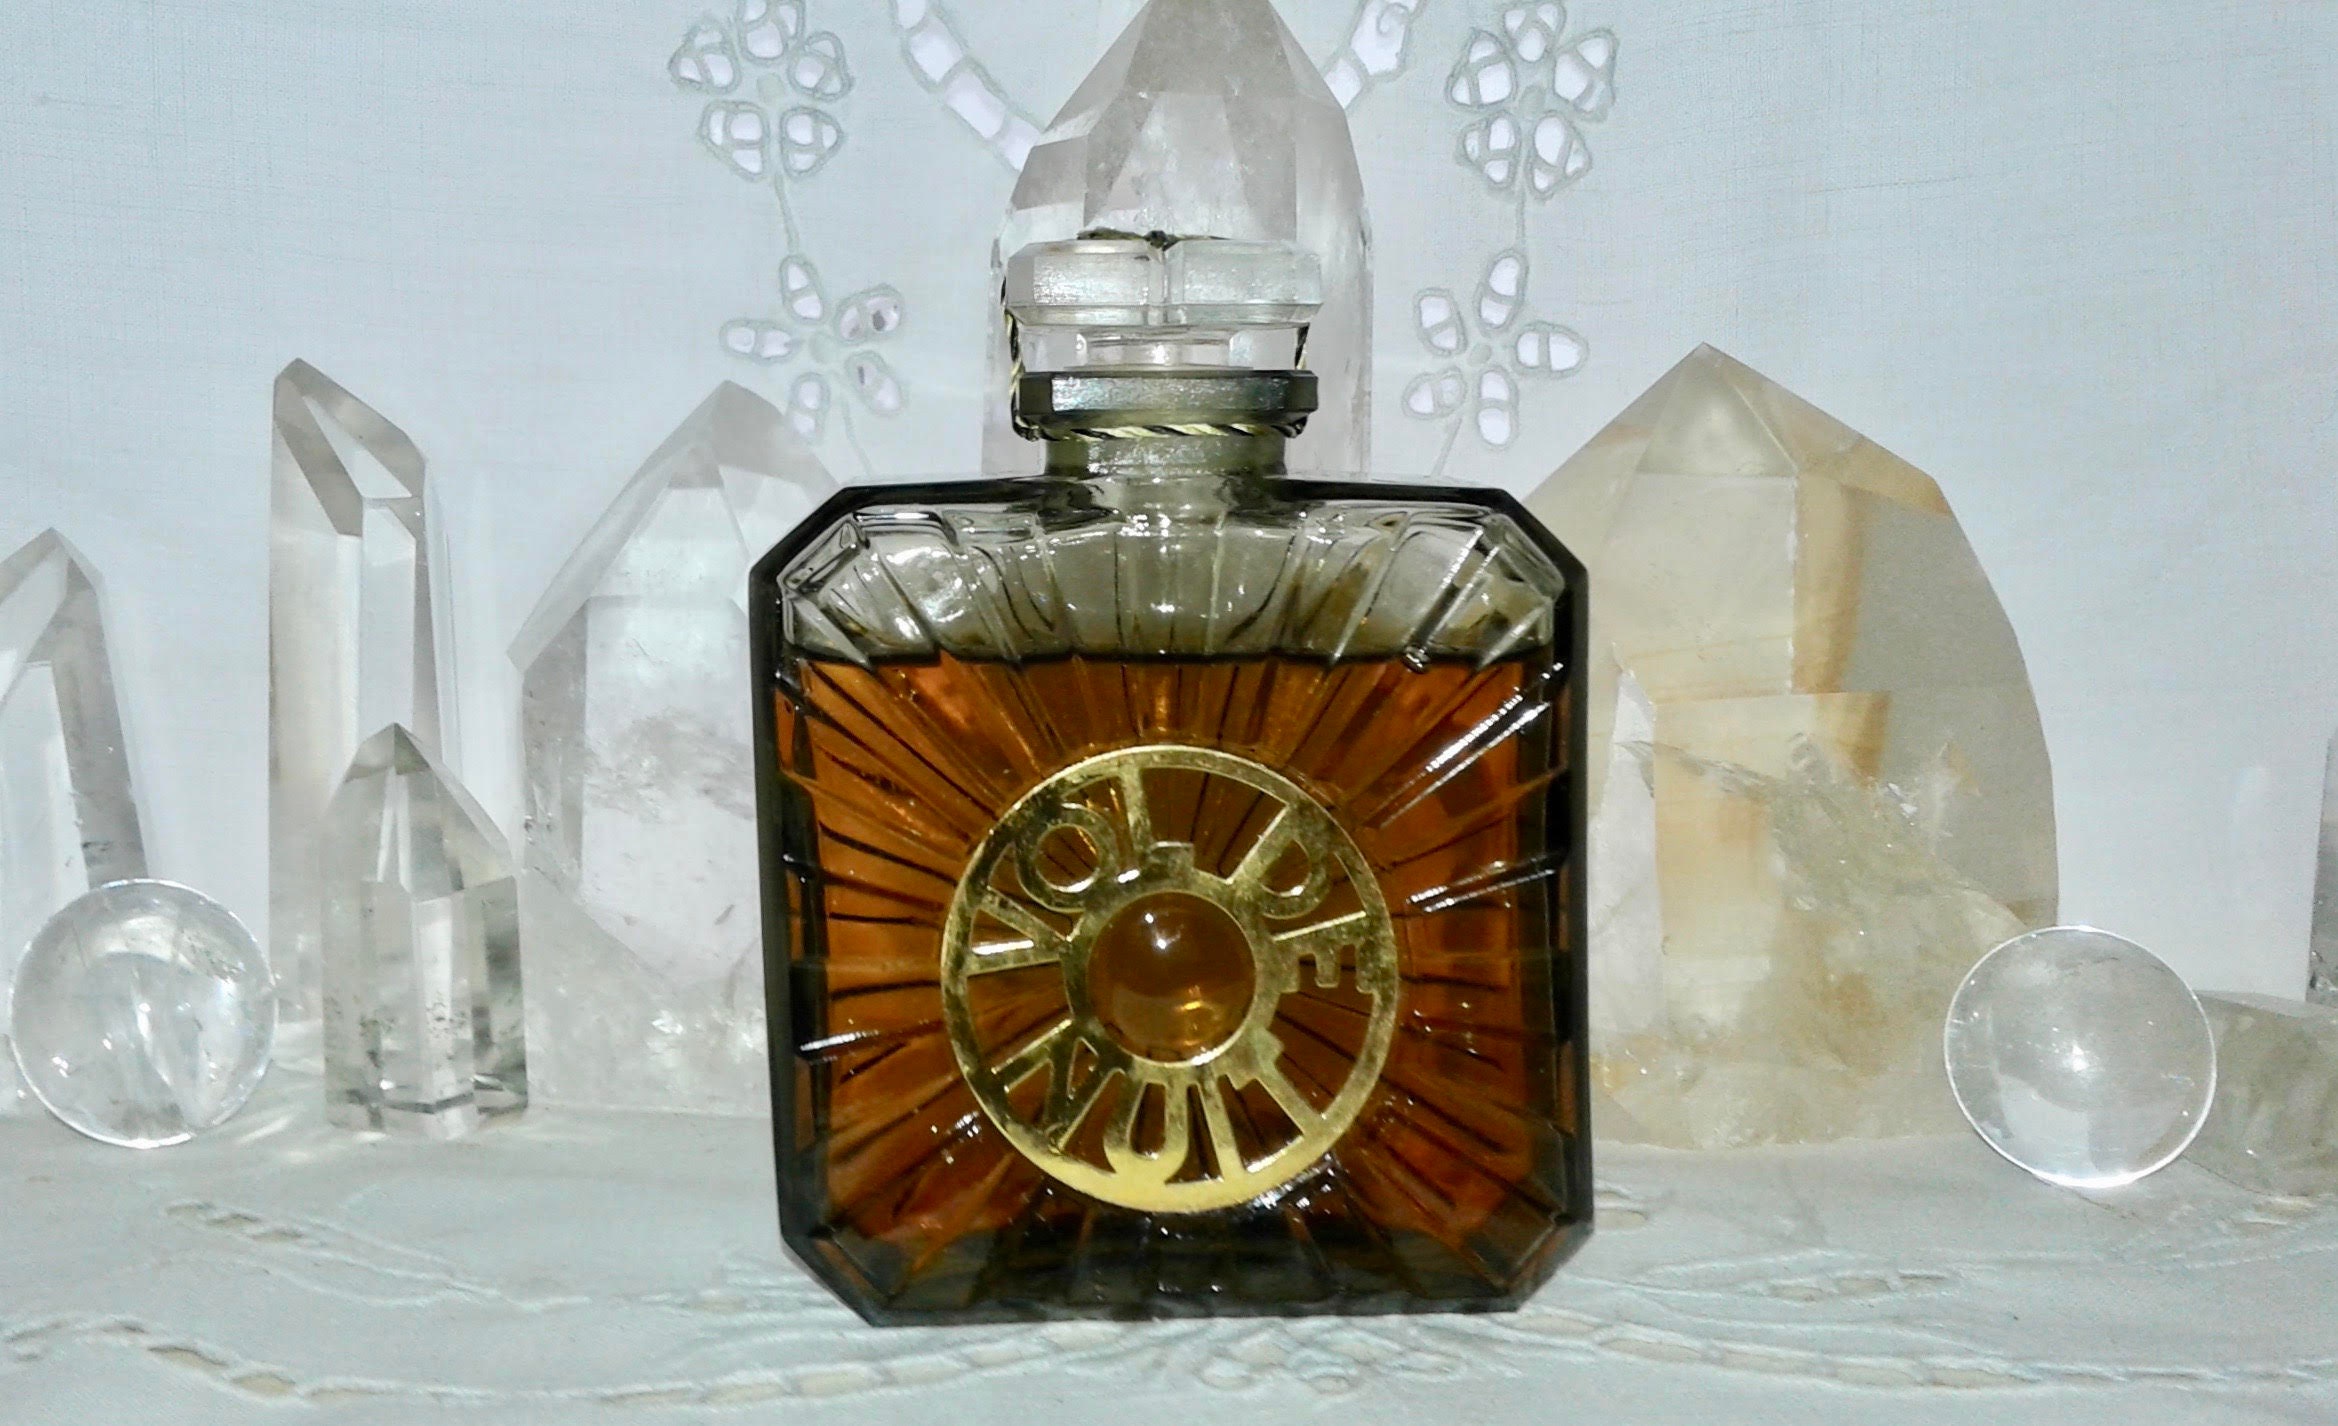 Guerlain Vol de Nuit 55 ml. or 1.95 oz. Flacon Parfum | Etsy